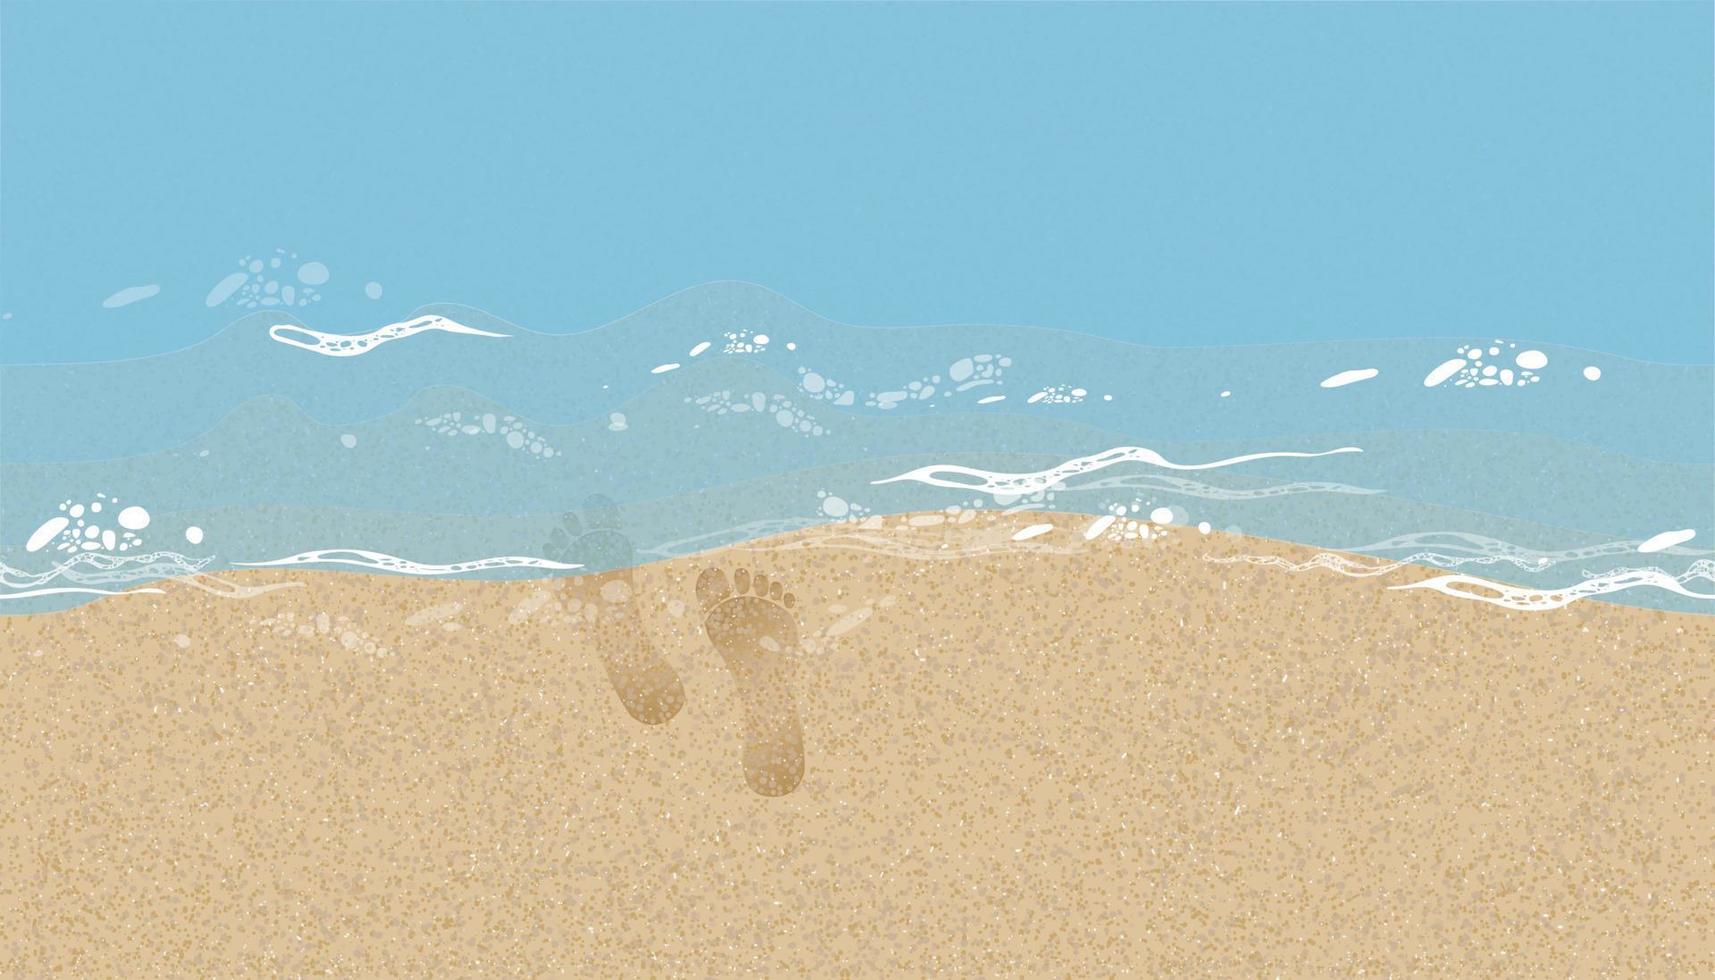 arena de playa de patrones sin fisuras con fondo de agua azul marino, huellas de pies humanos en la textura de la arena.ilustración vectorial telón de fondo duna de arena de playa marrón con descalzo en la ola del mar para la pancarta de verano vector